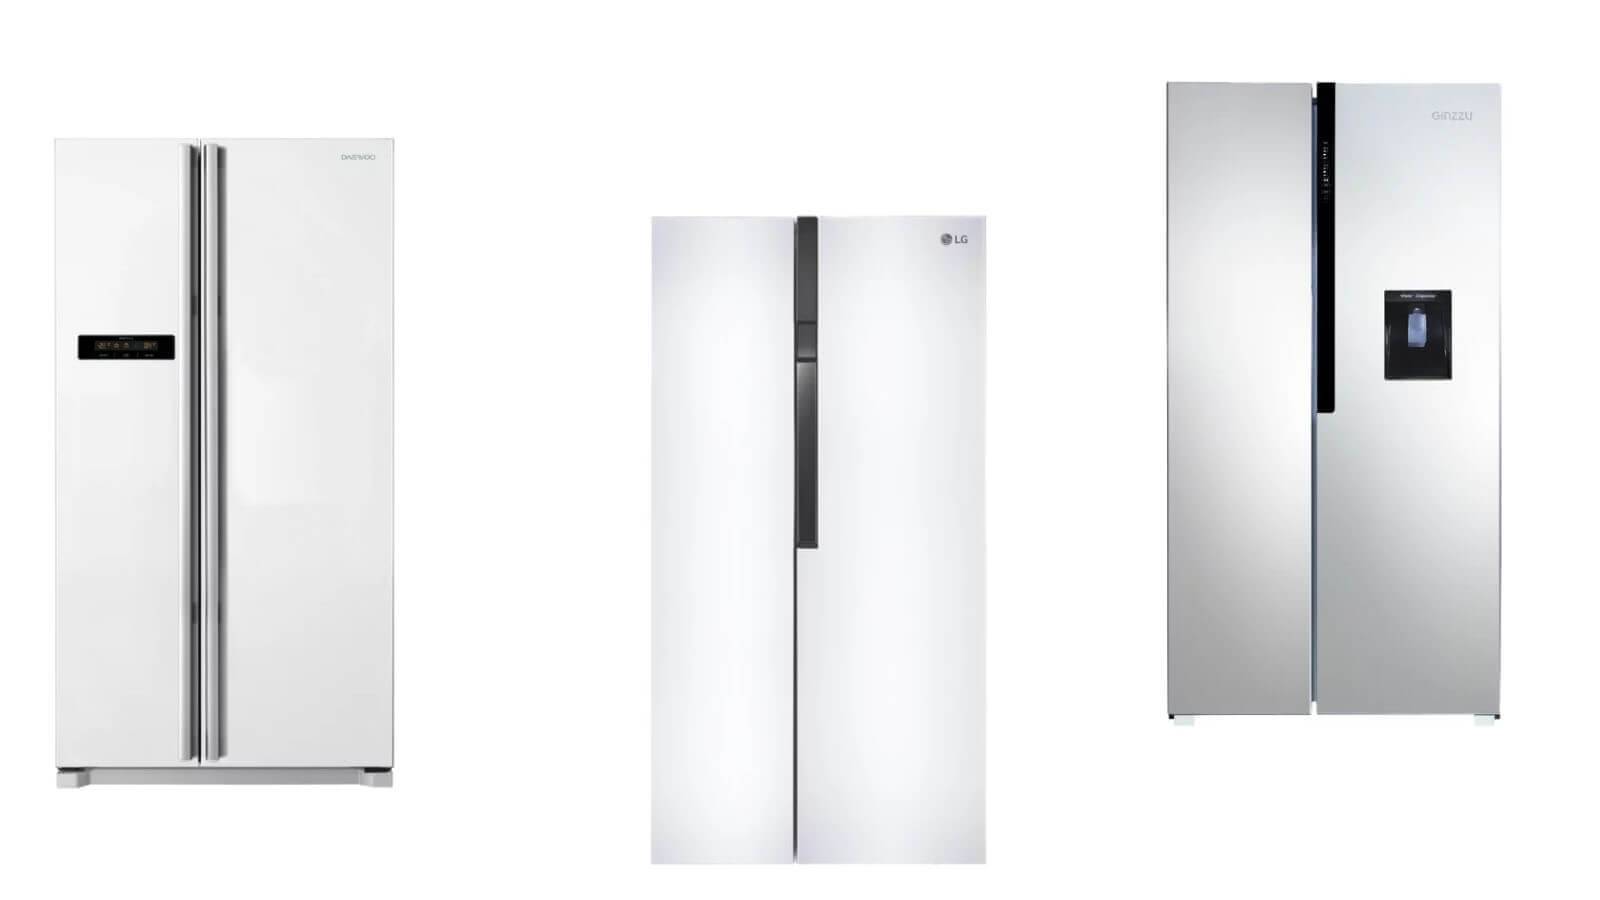 12 лучших моделей холодильников по качеству и надежности